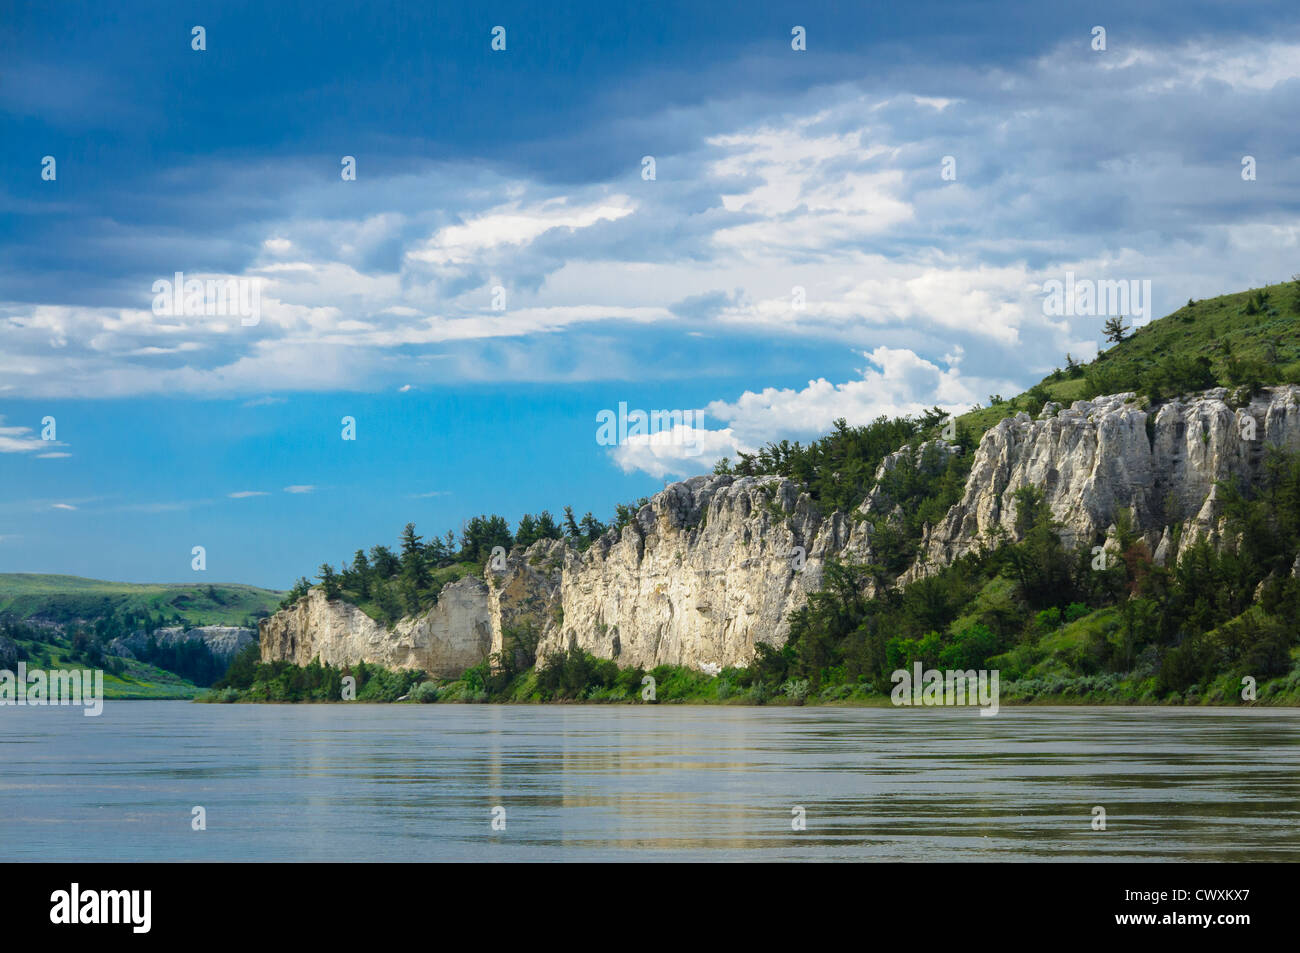 Falaises de grès blanc de la partie supérieure de la rivière Missouri Breaks National Monument, au Montana. Banque D'Images